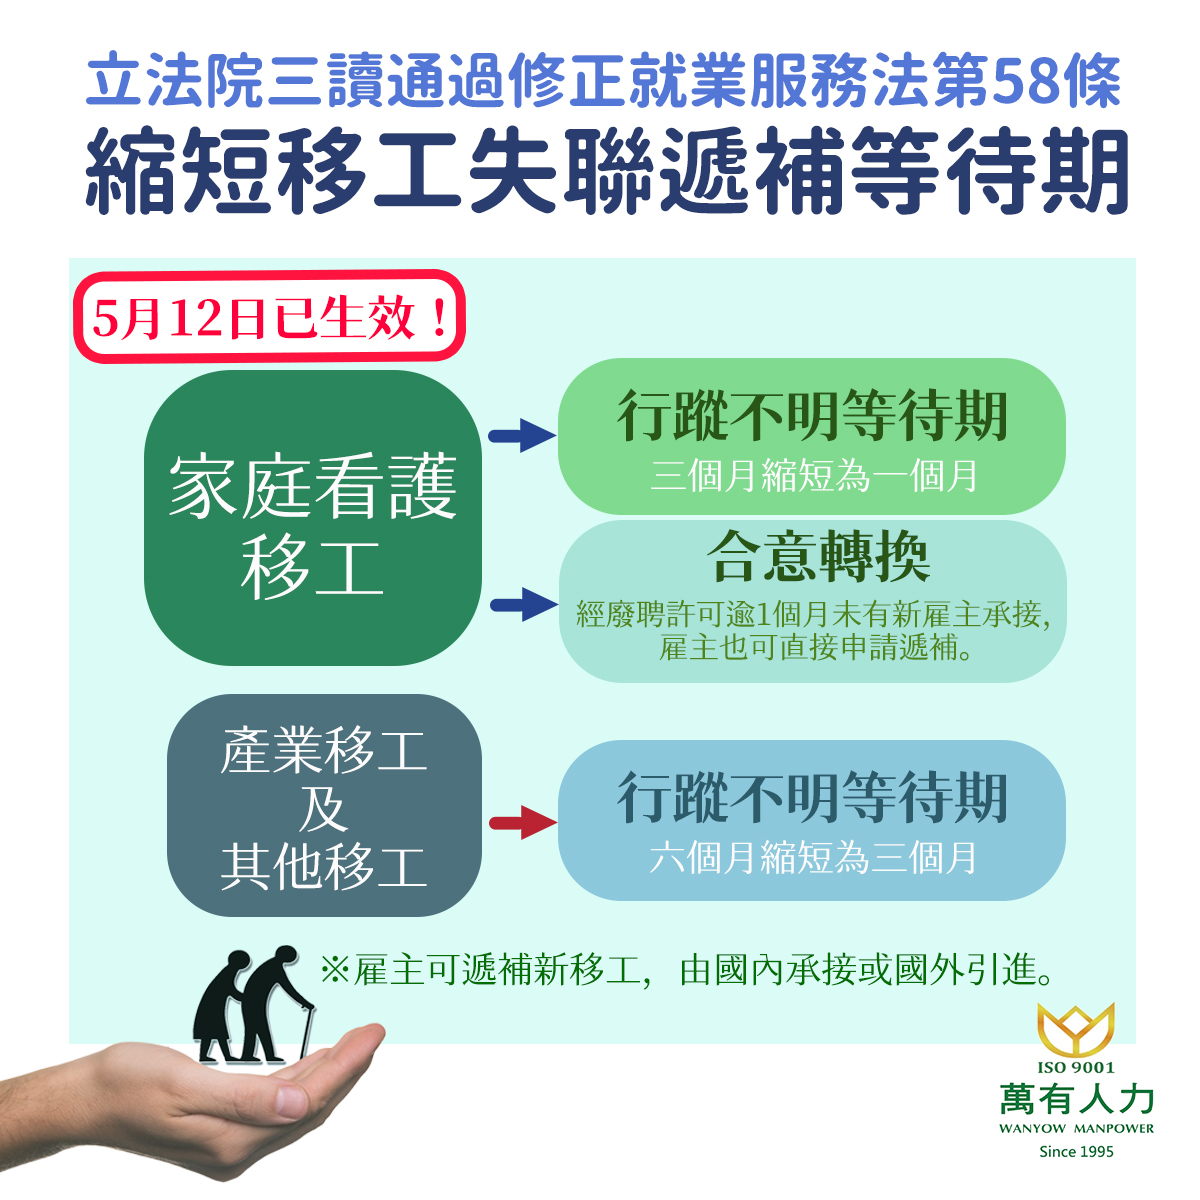 社團法人台灣失智症協會所送失智症照顧教材之網路